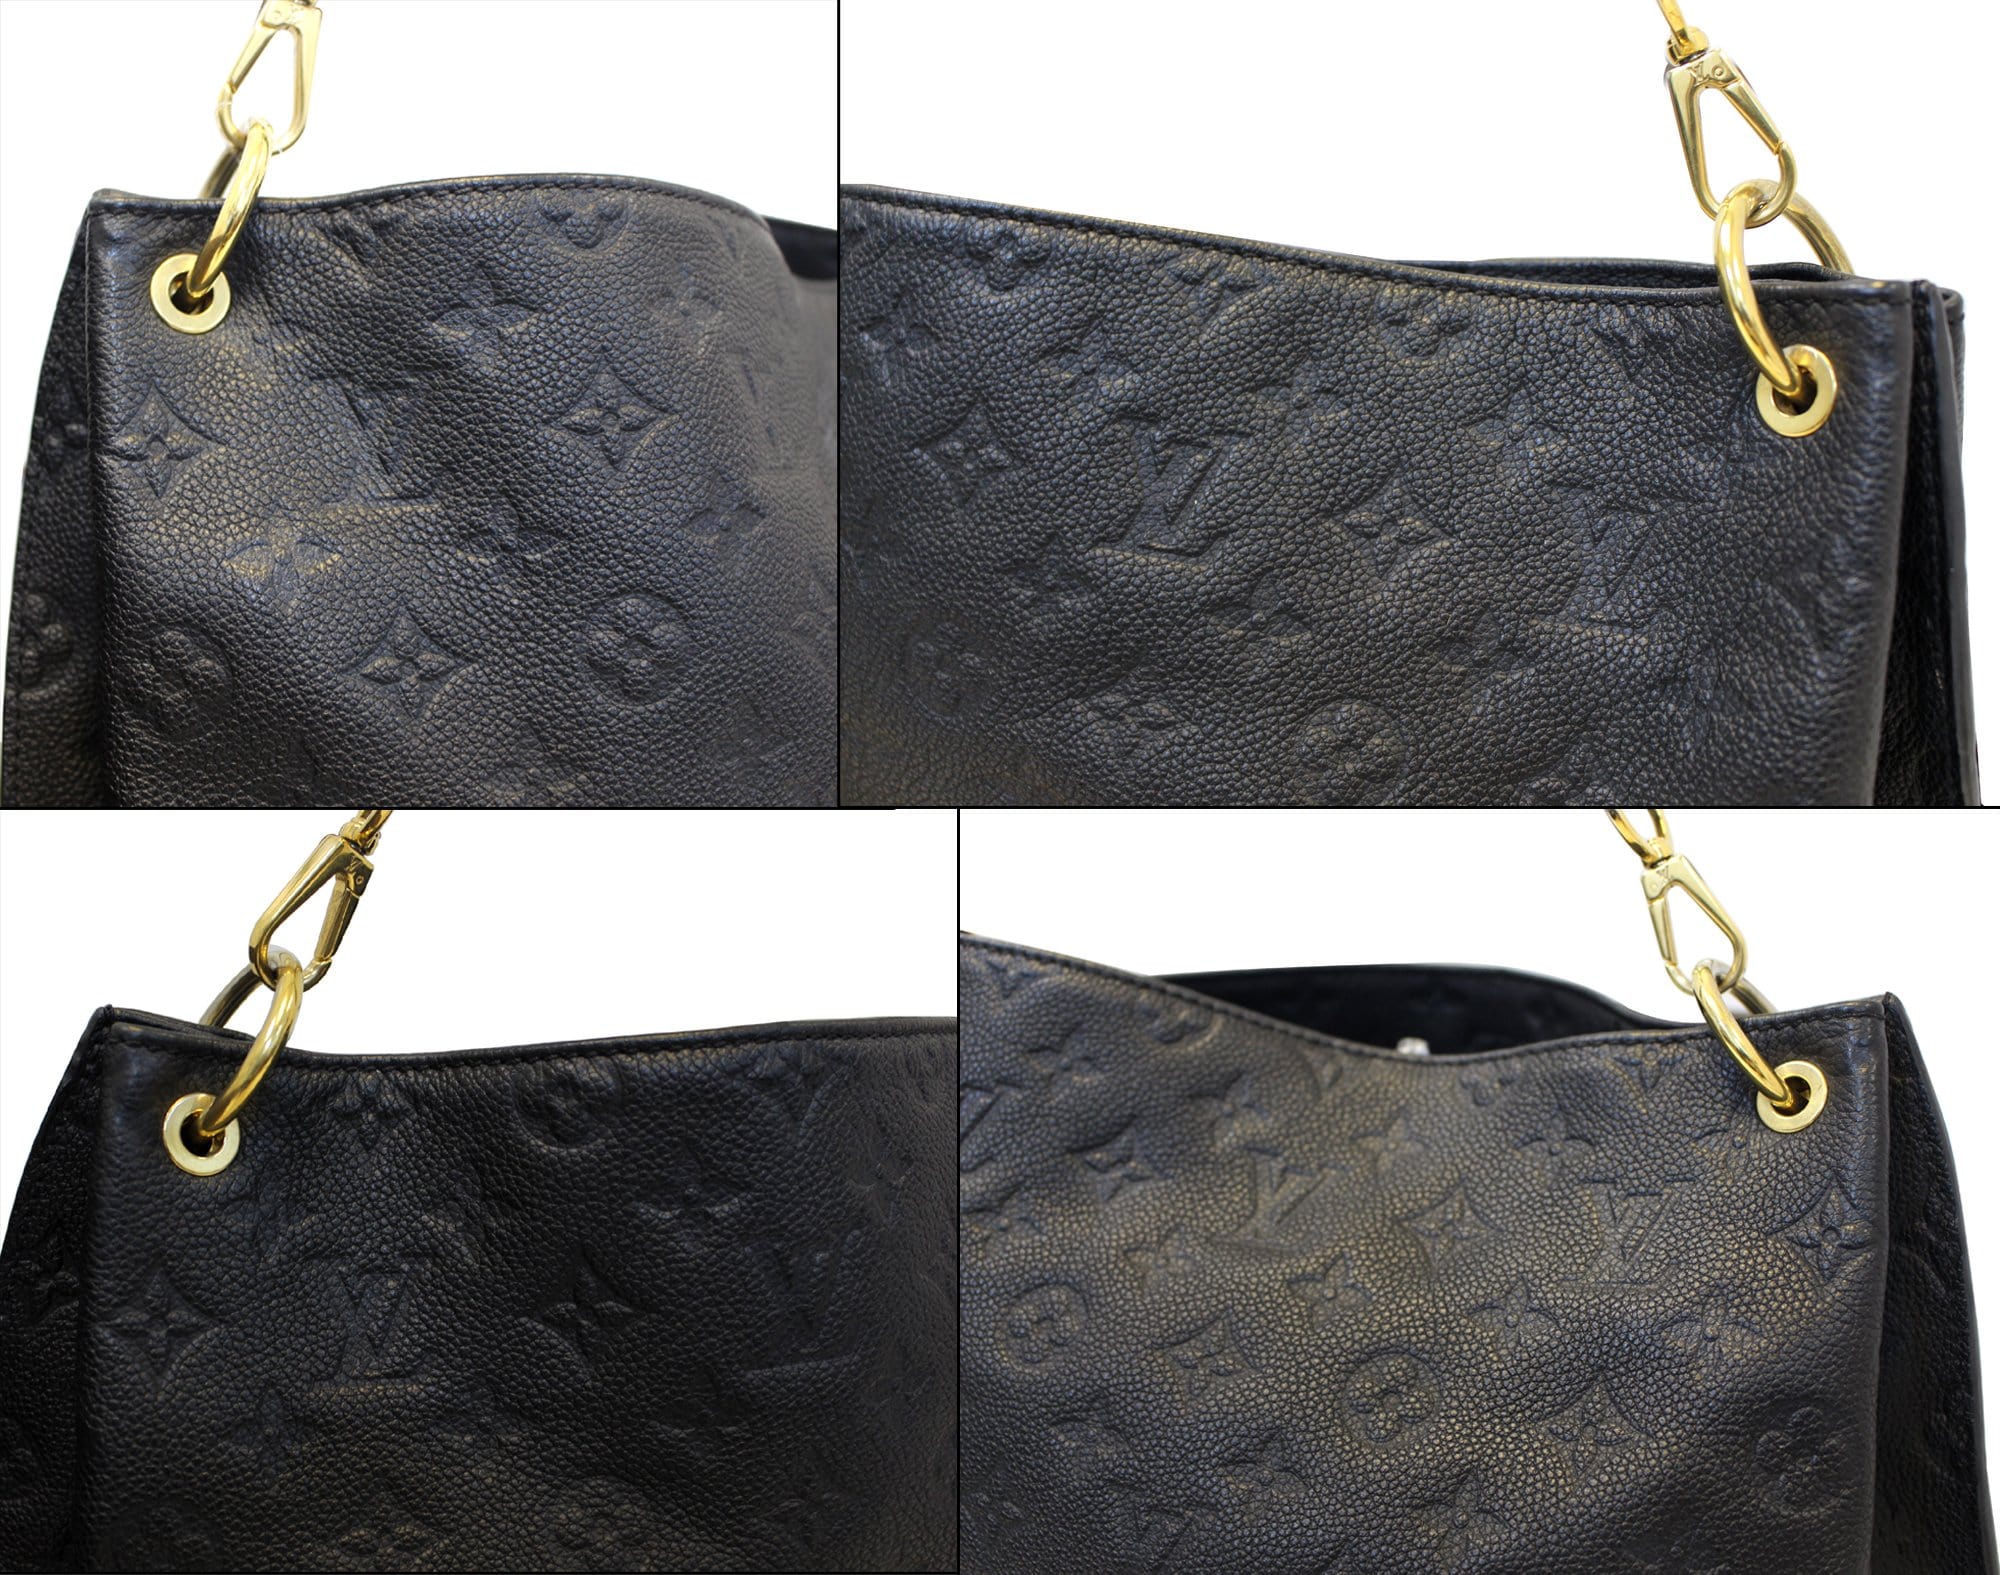 Louis Vuitton Monogram Empreinte Métis Hobo  Louis vuitton, Louis vuitton  handbags outlet, Cheap louis vuitton bags